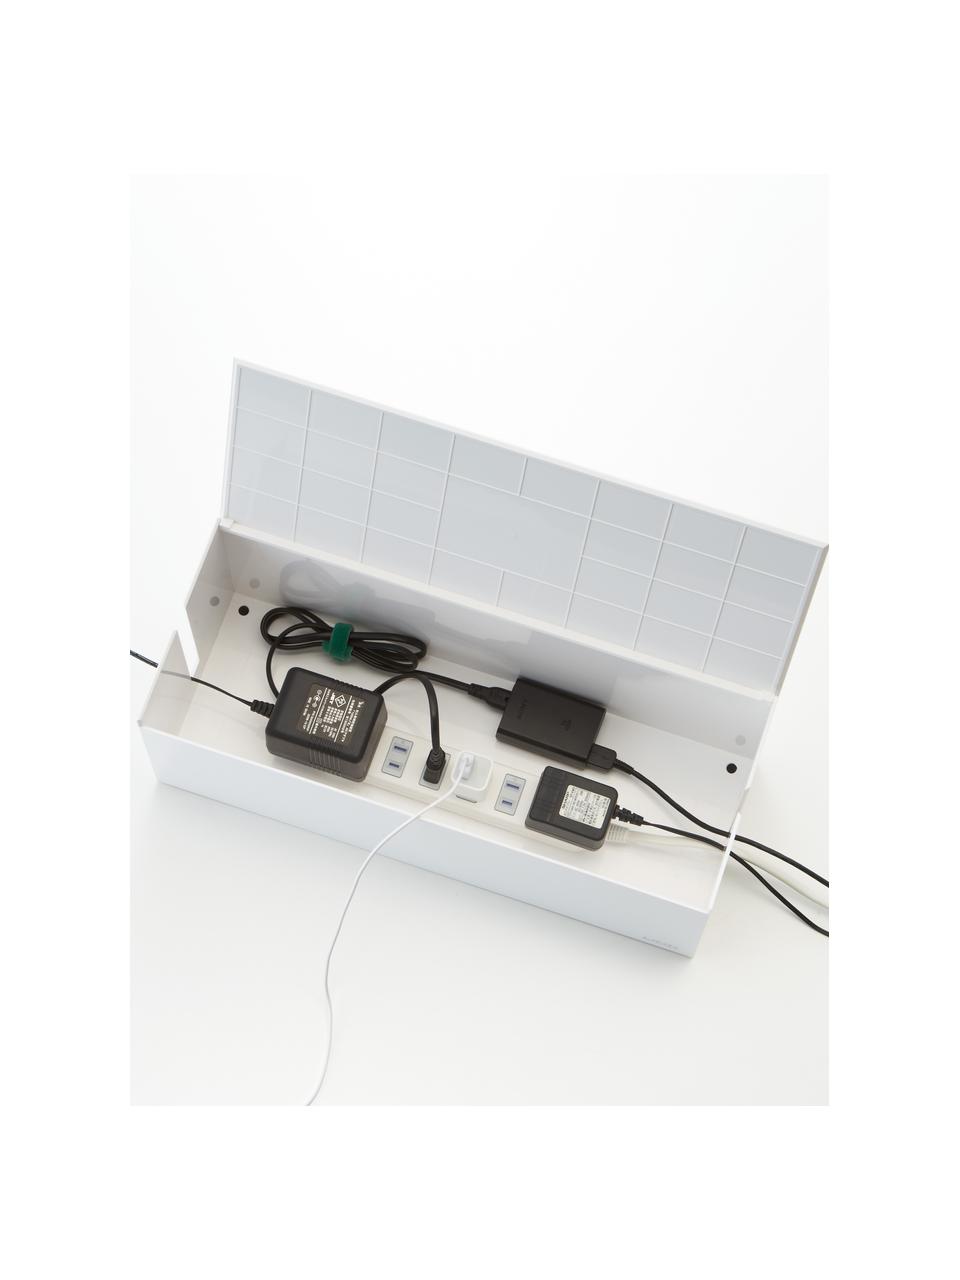 Pudełko na kable Web, Tworzywo sztuczne (poliwęglan), poliresing, Biały, S 40 x W 15 cm